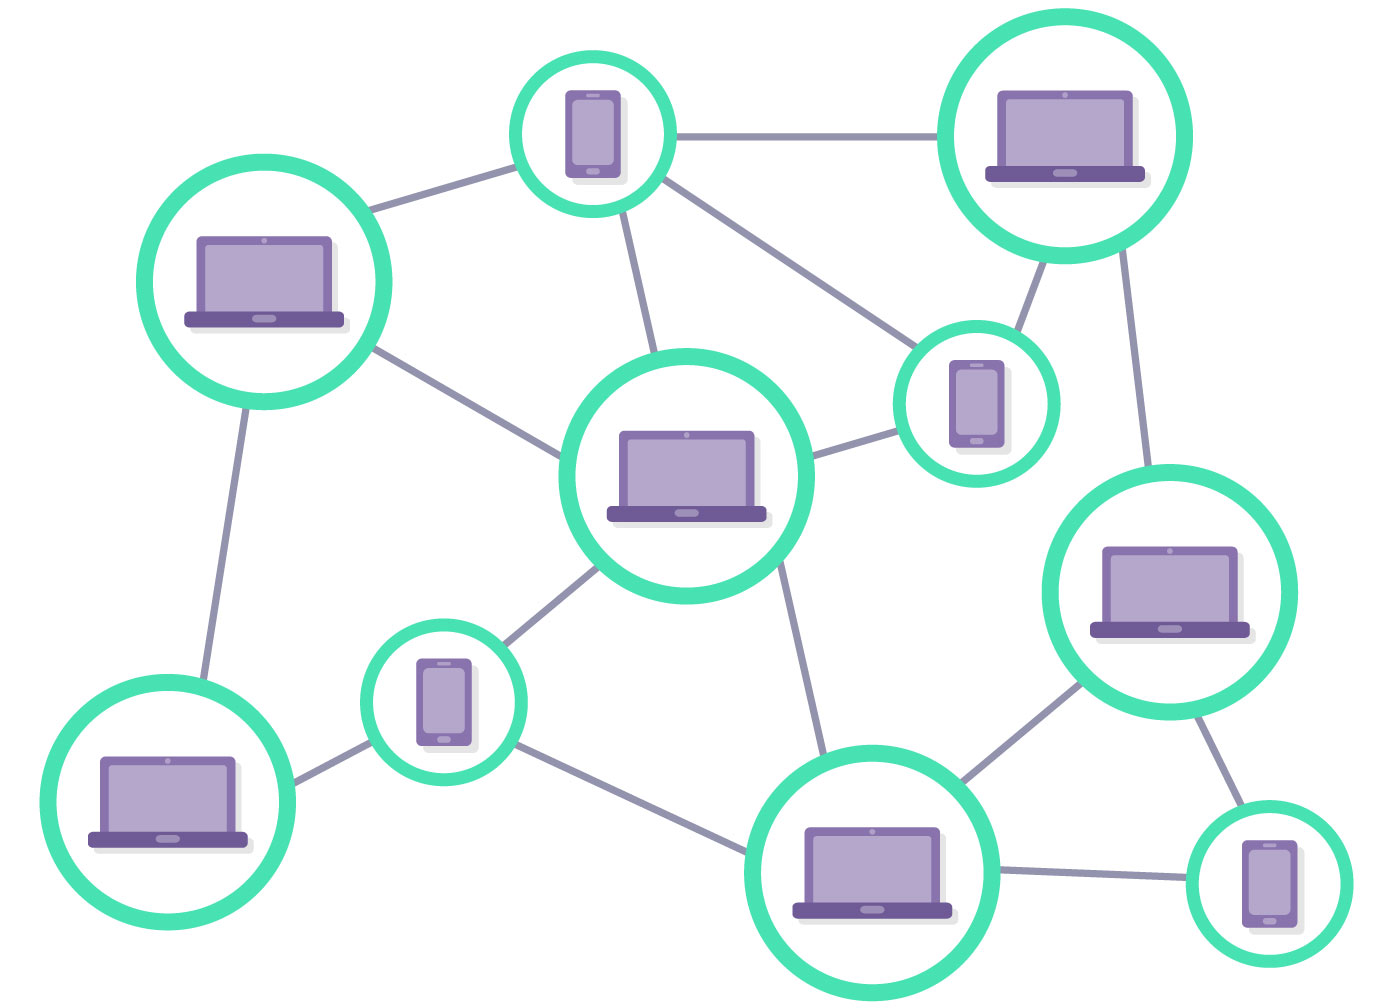 Blockchain as a peer-to-peer network